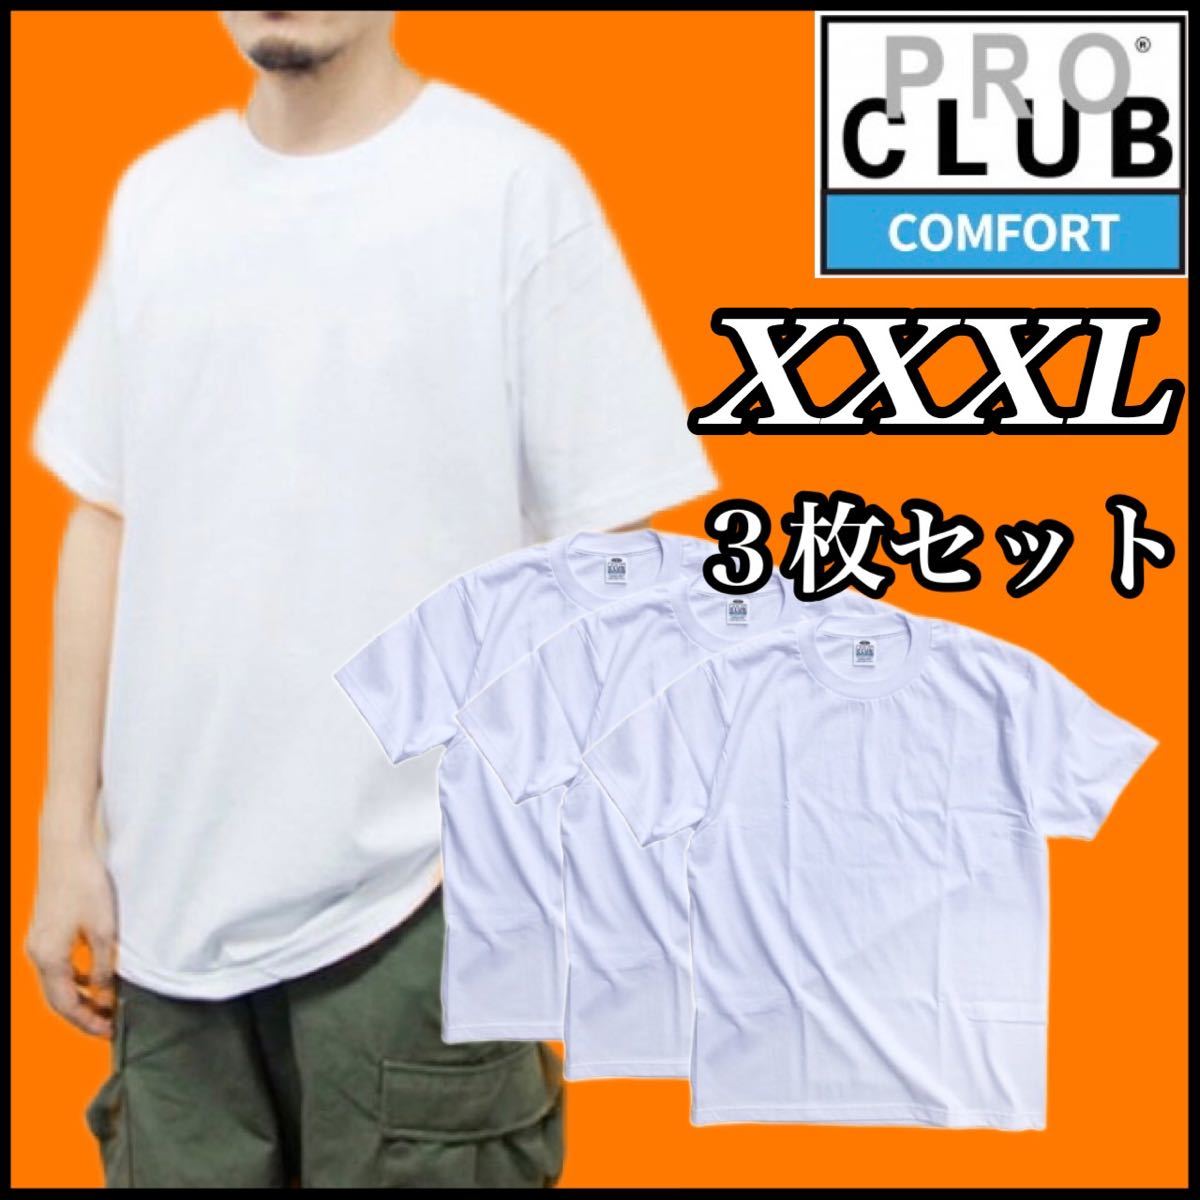 【新品未使用】PROCLUB プロクラブ COMFORT コンフォート 5.8oz 無地半袖Tシャツ 白3枚セット 3XLサイズ